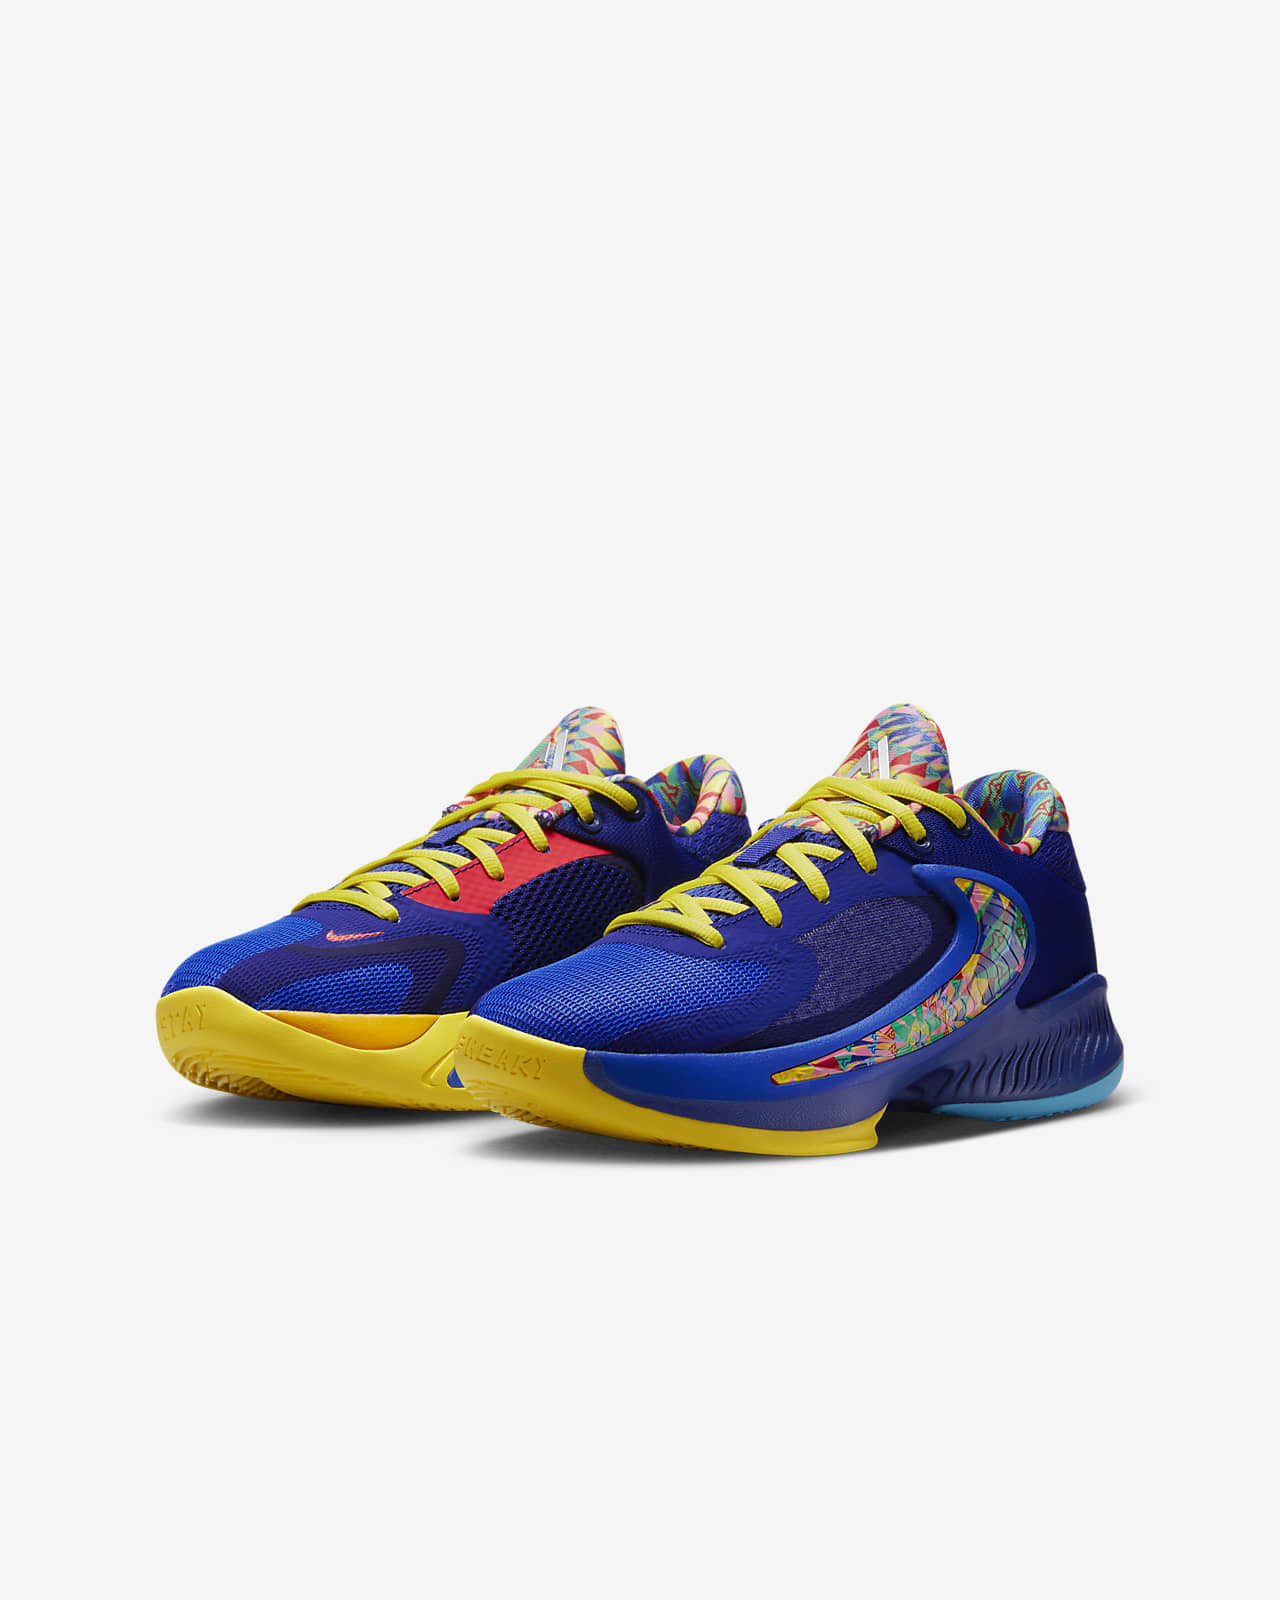 SE Big Kids' Basketball Shoes. Nike.com